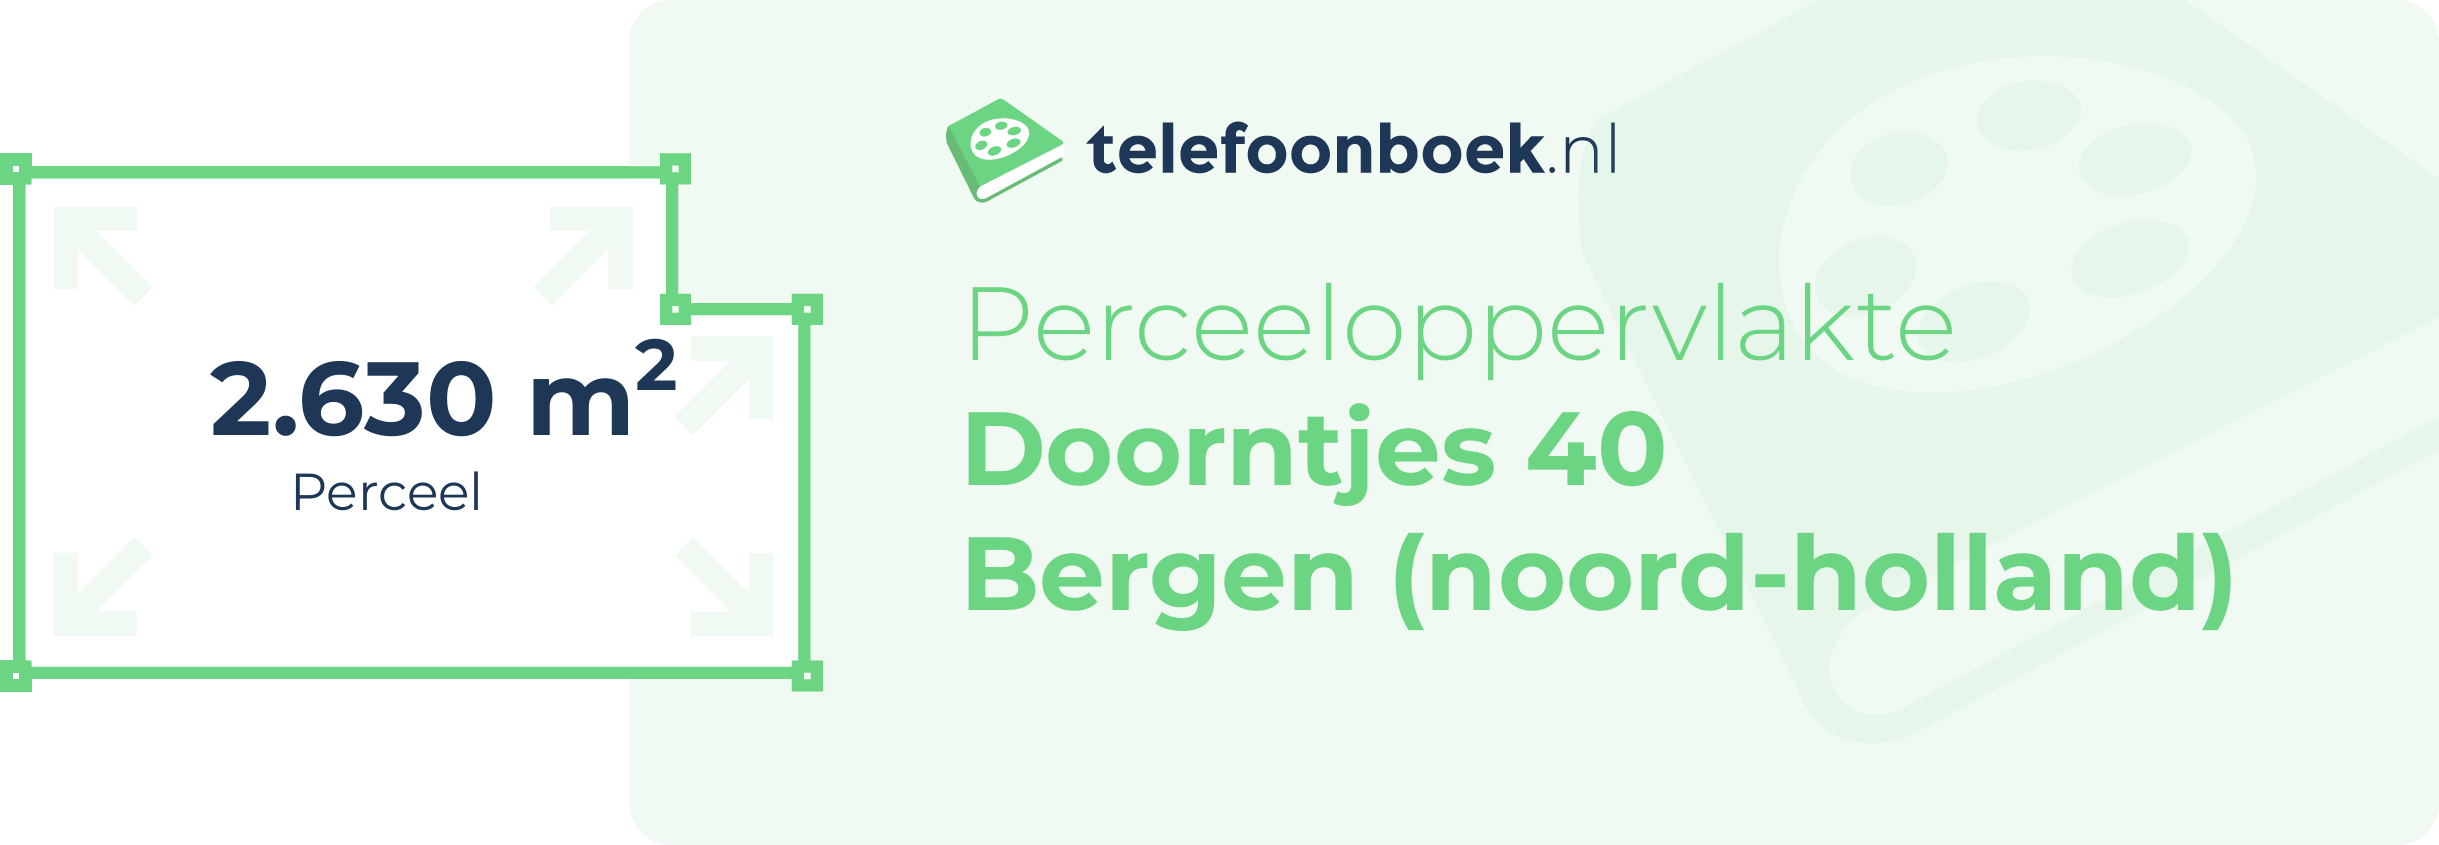 Perceeloppervlakte Doorntjes 40 Bergen (Noord-Holland)